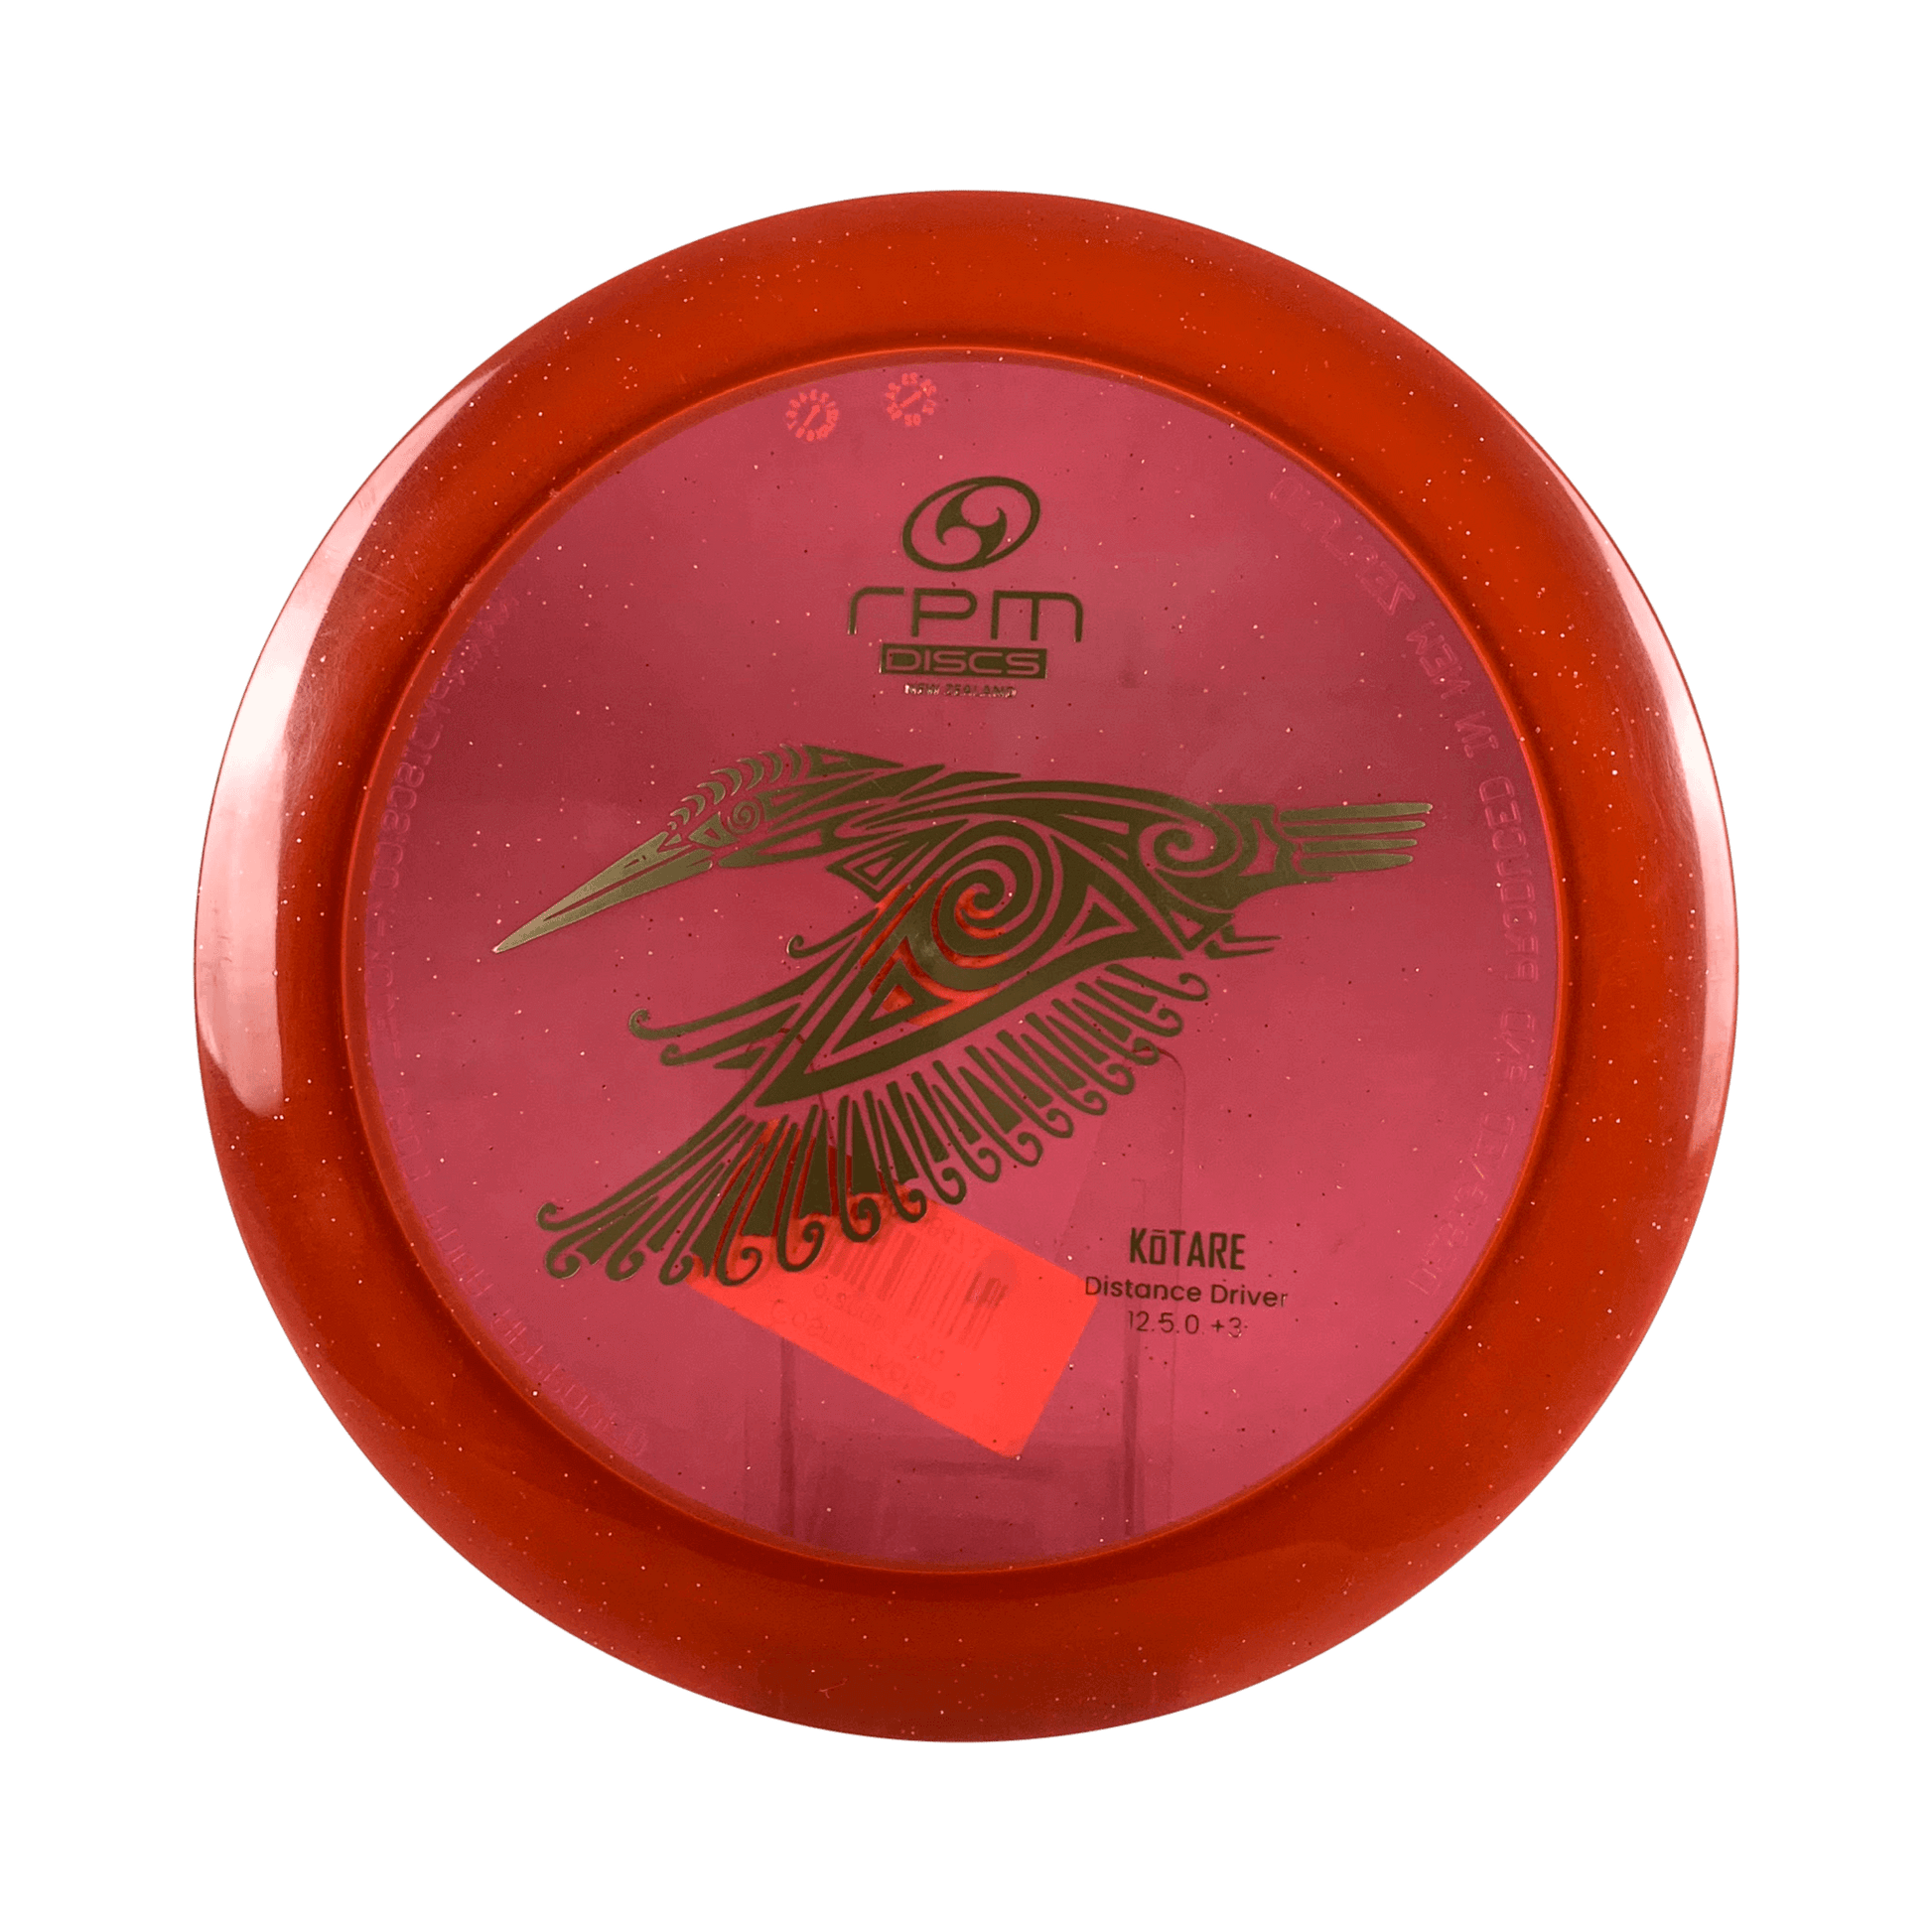 Cosmic Kotare Disc RPM Discs orange 170 